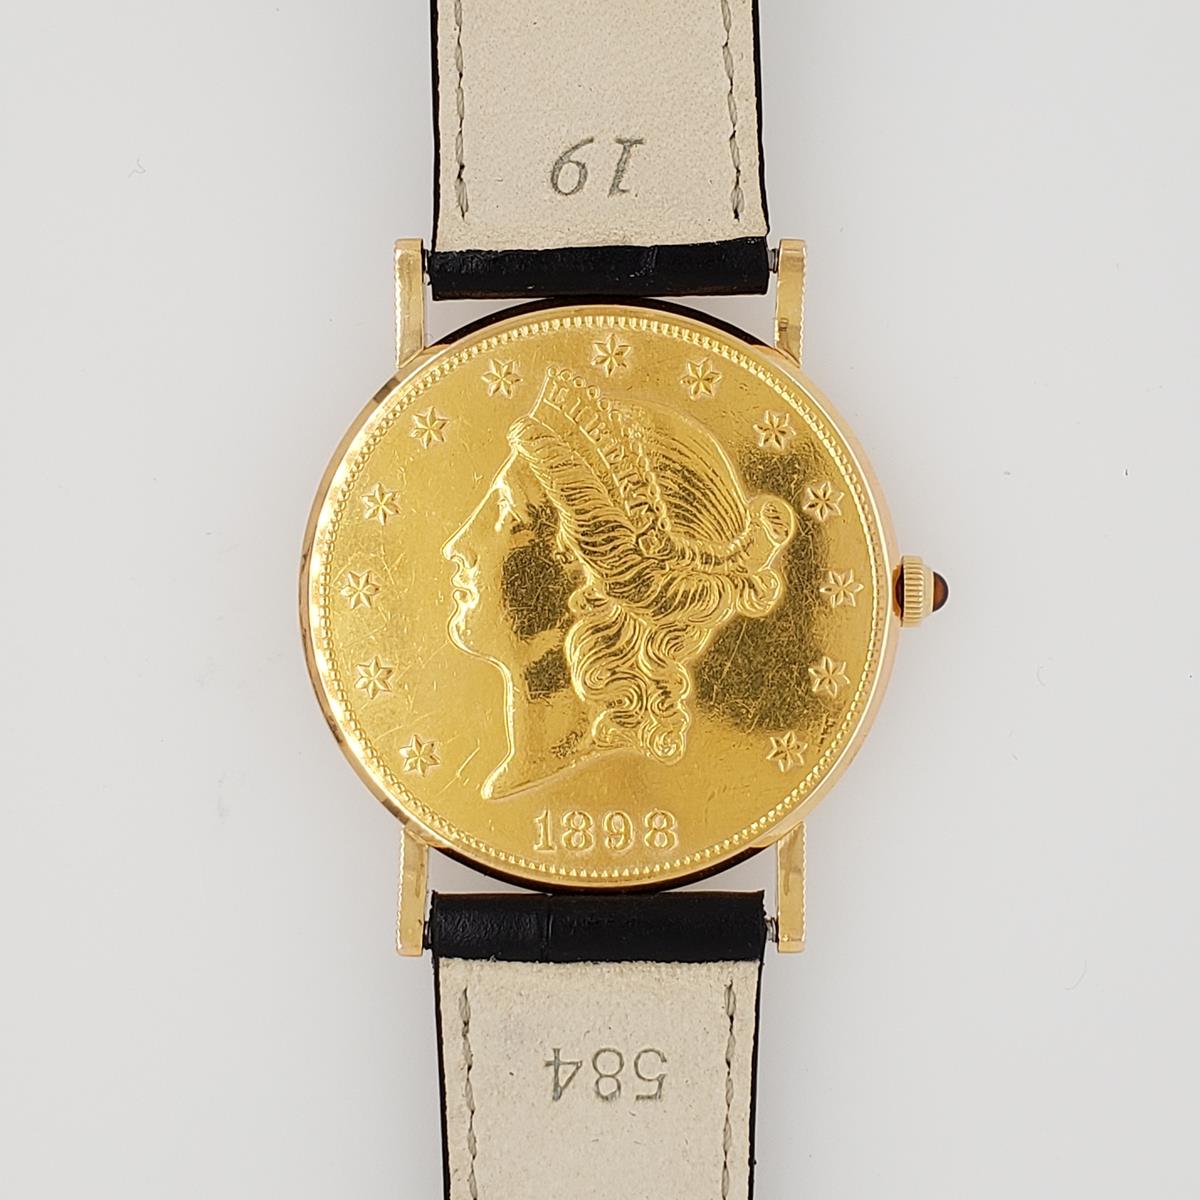 Corum $20 Gold Coin Mechanical Watch